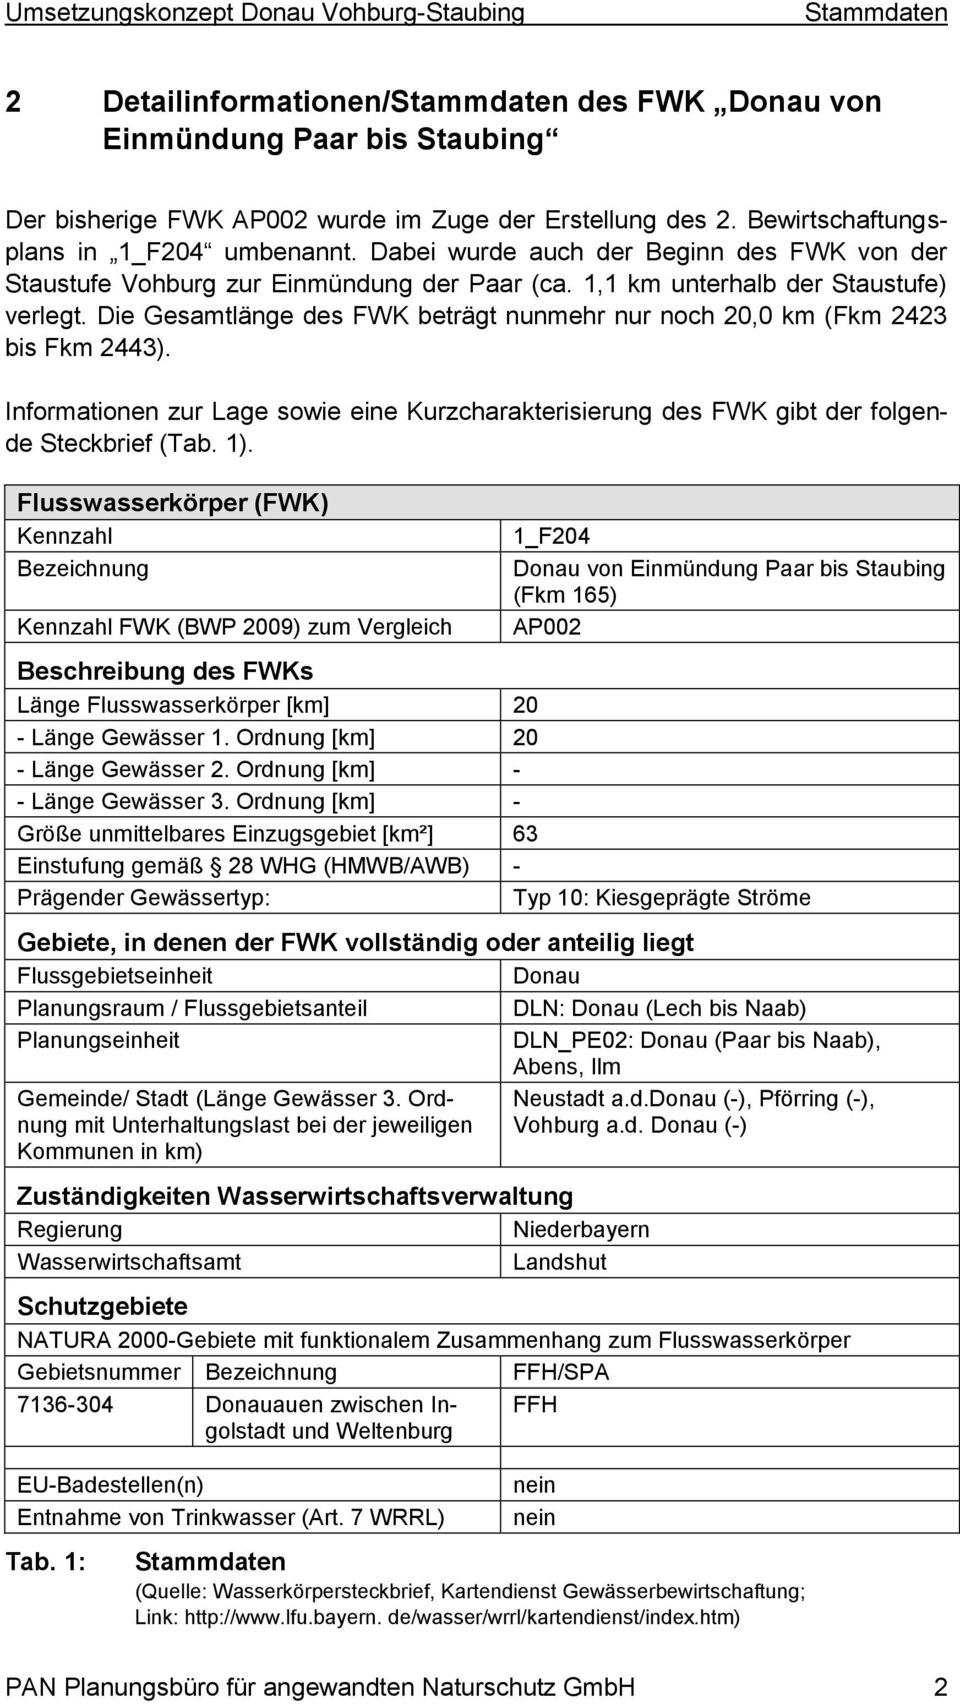 Die Gesamtlänge des FWK beträgt nunmehr nur noch 20,0 km (Fkm 2423 bis Fkm 2443). Informationen zur Lage sowie eine Kurzcharakterisierung des FWK gibt der folgende Steckbrief (Tab. 1).